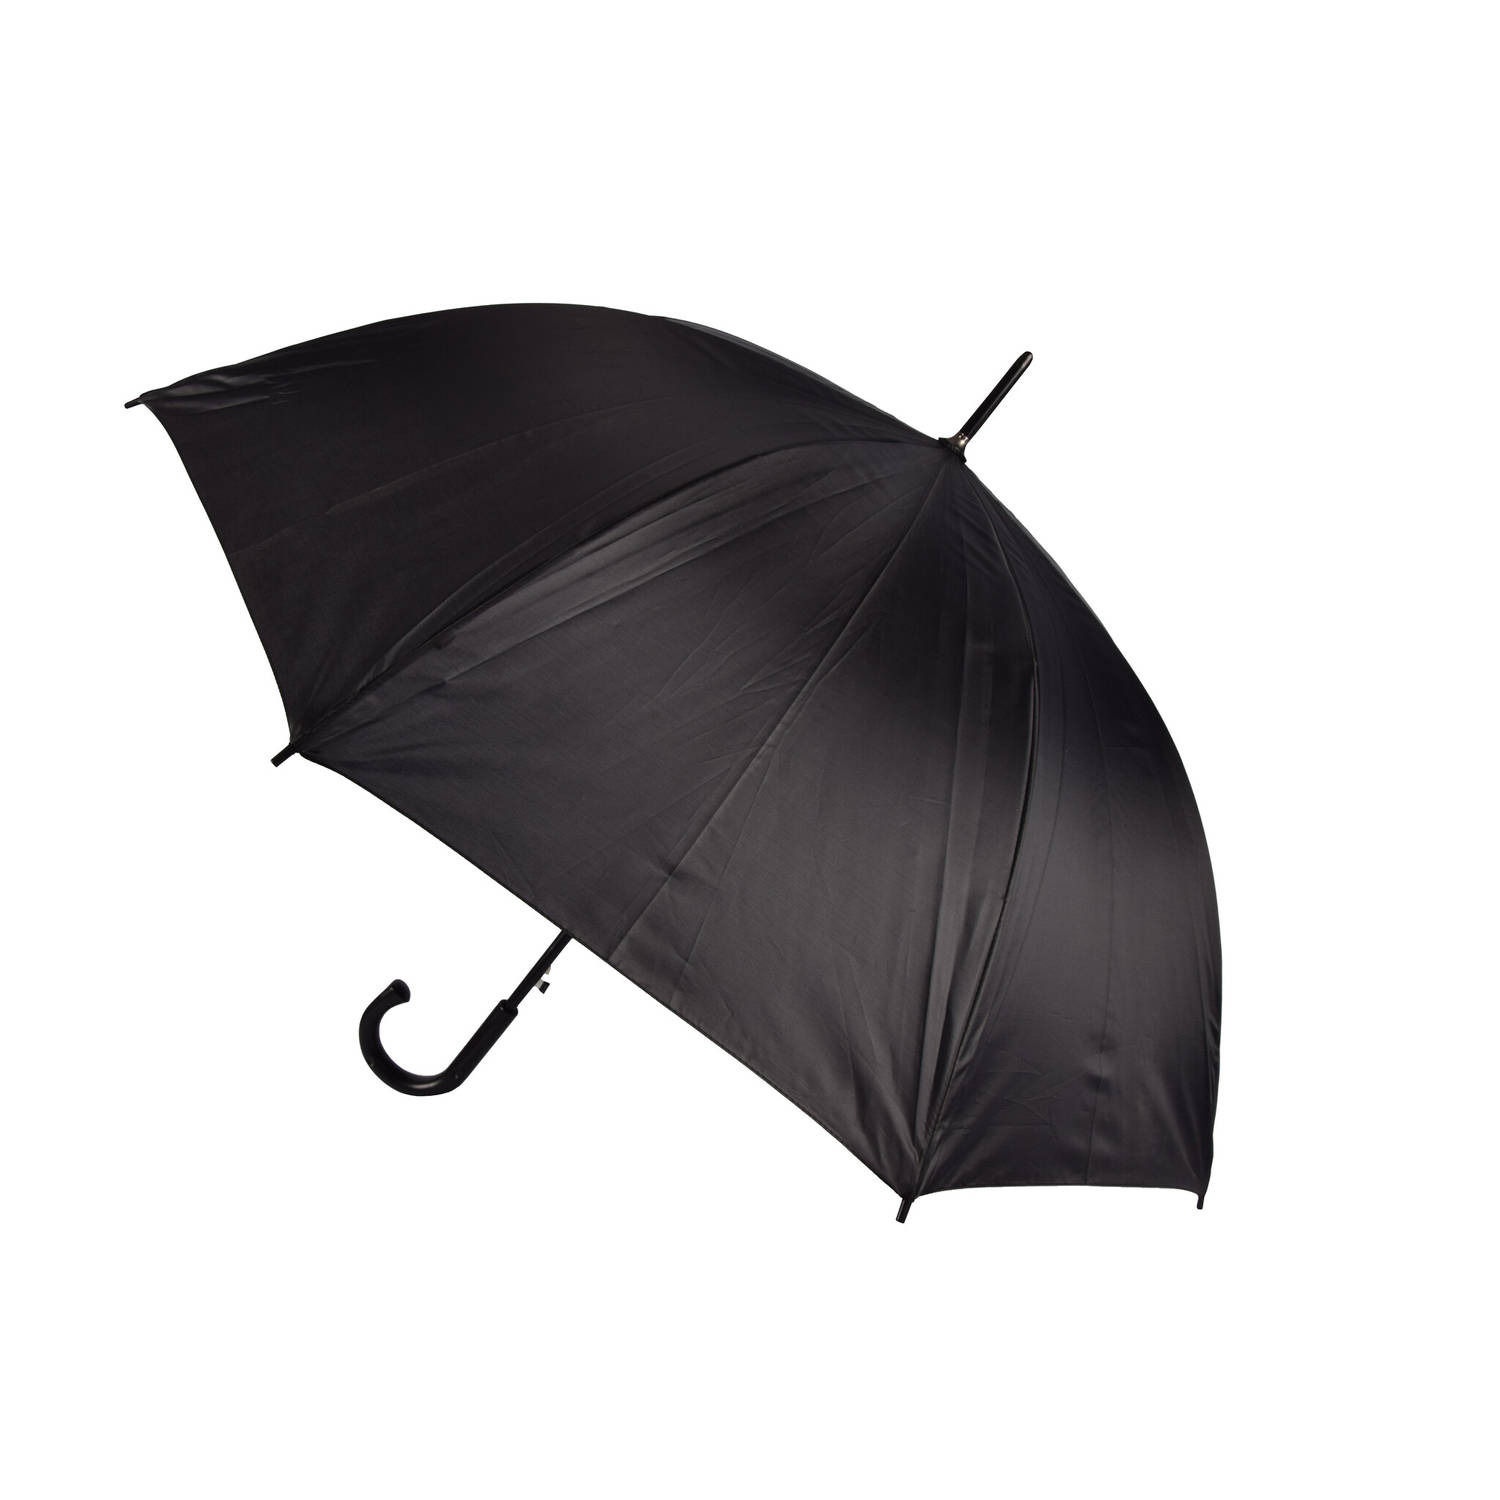 Paraplu Stevige Paraplu 112 cm Limited Edition Grote Paraplu Zwarte Automatische Paraplu Voor Volwassenen